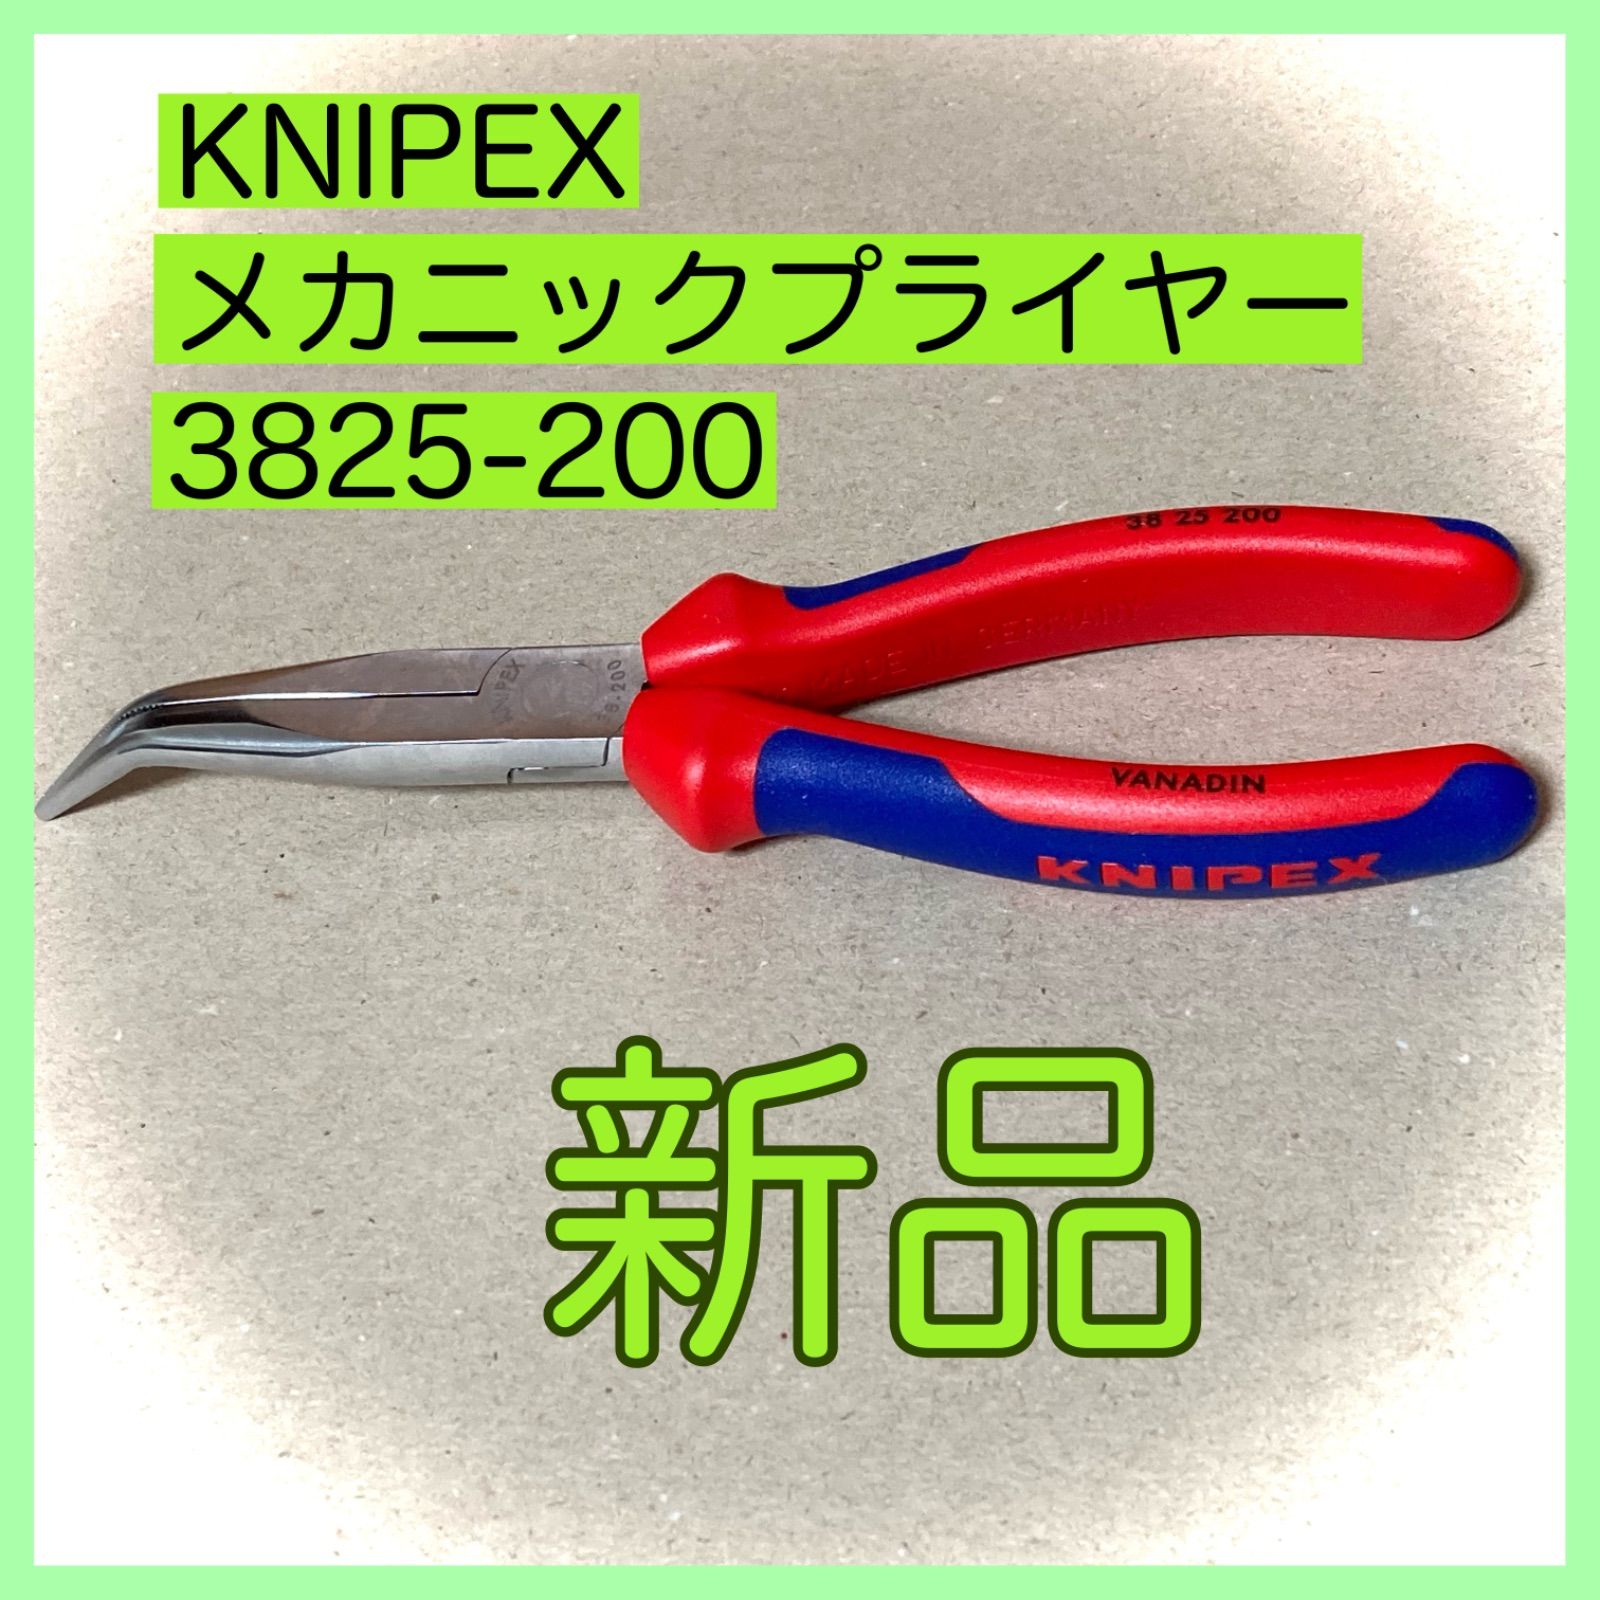 KNIPEX(クニペックス) 絶縁1000Vロングラジオペンチ 200mm 2616200